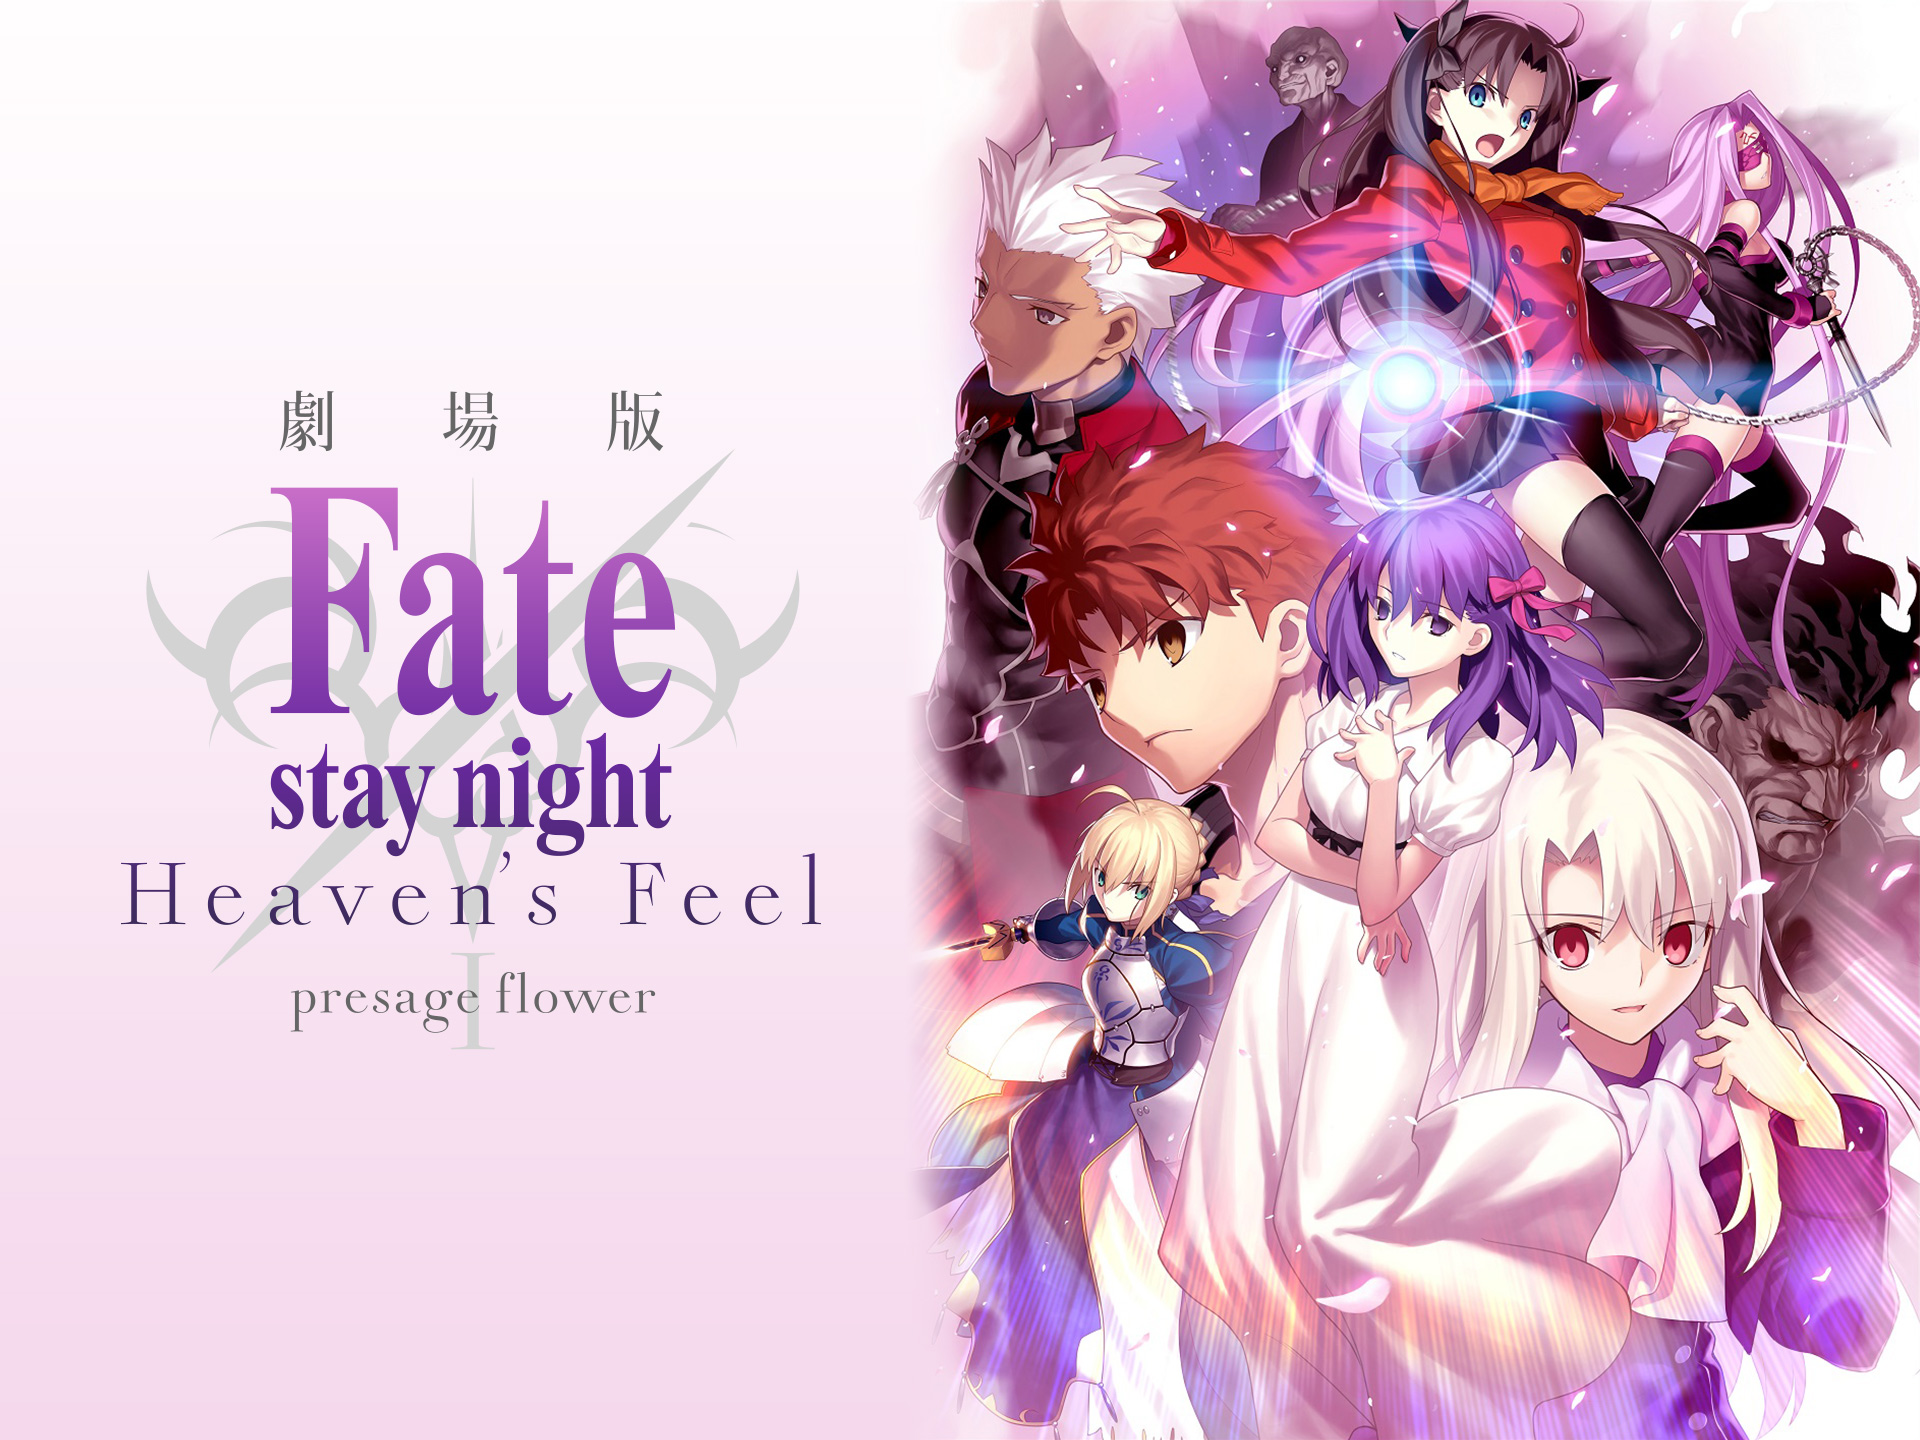 アニメ 劇場版 Fate Stay Night Heaven S Feel I Presage Flower の動画 初月無料 動画配信サービスのビデオマーケット